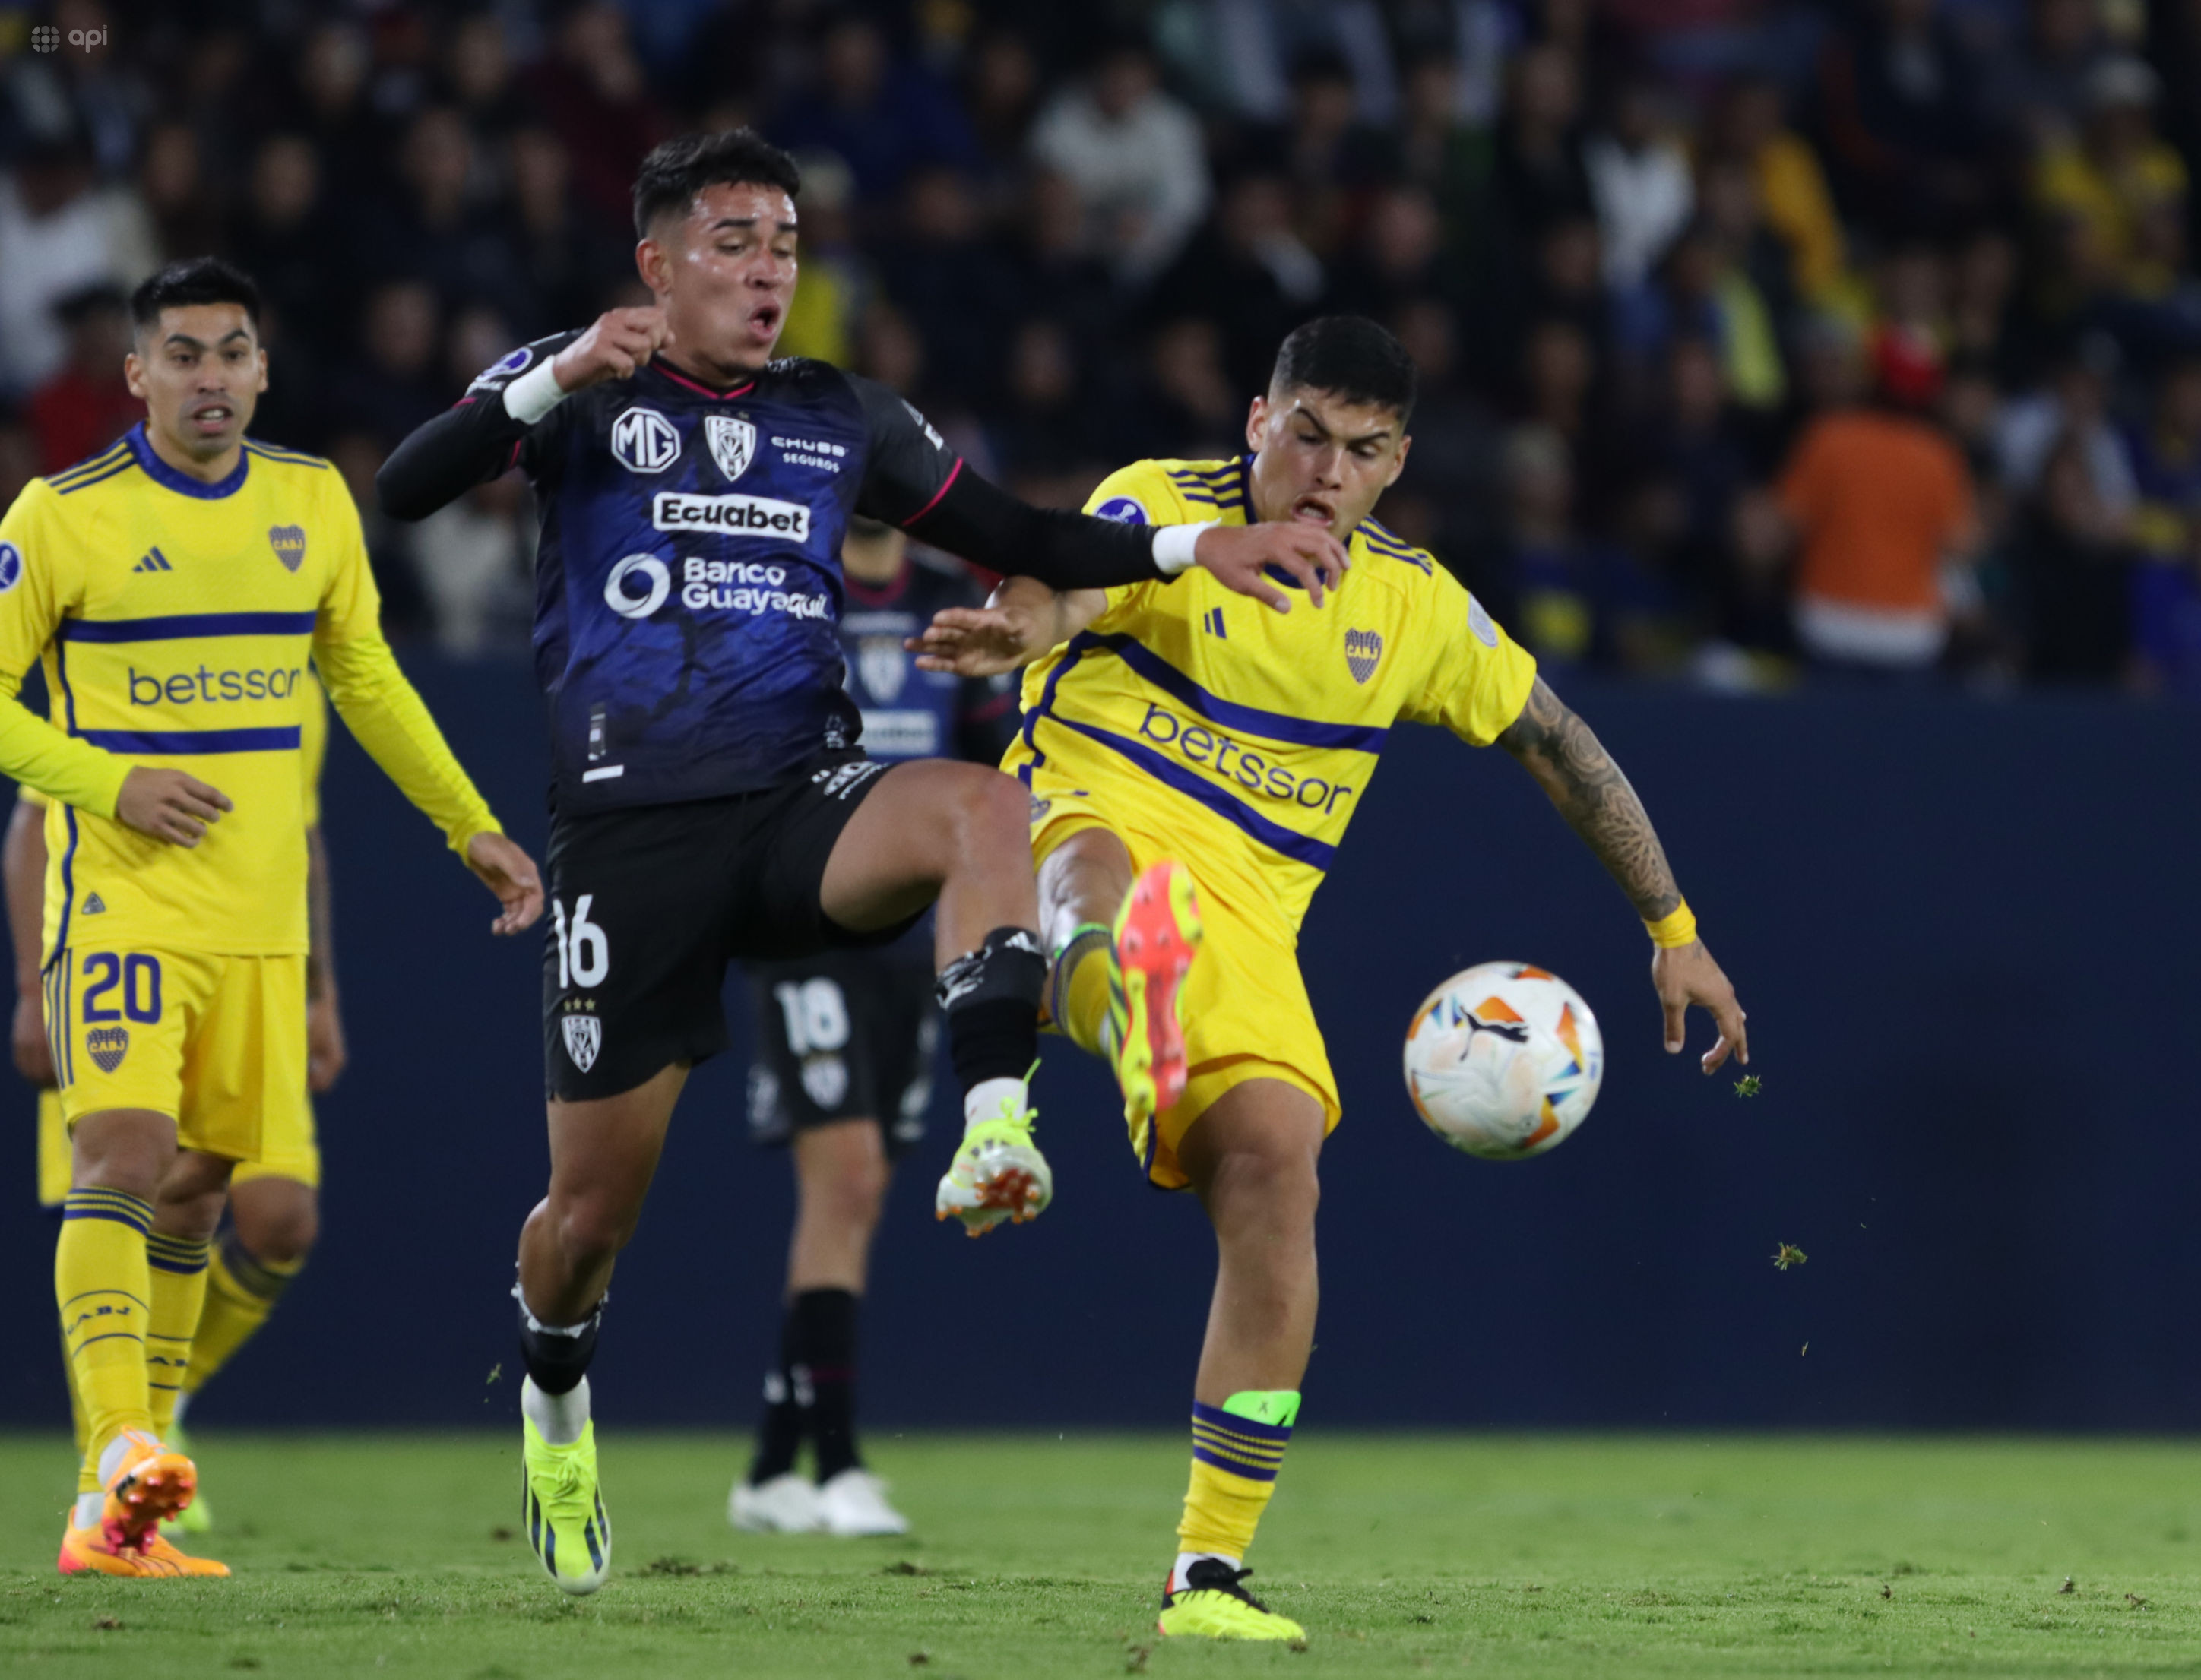 Independiente del Valle y Boca Juniors, este último con un equipo alterno, empataron sin goles en el estadio Banco Guayaquil.